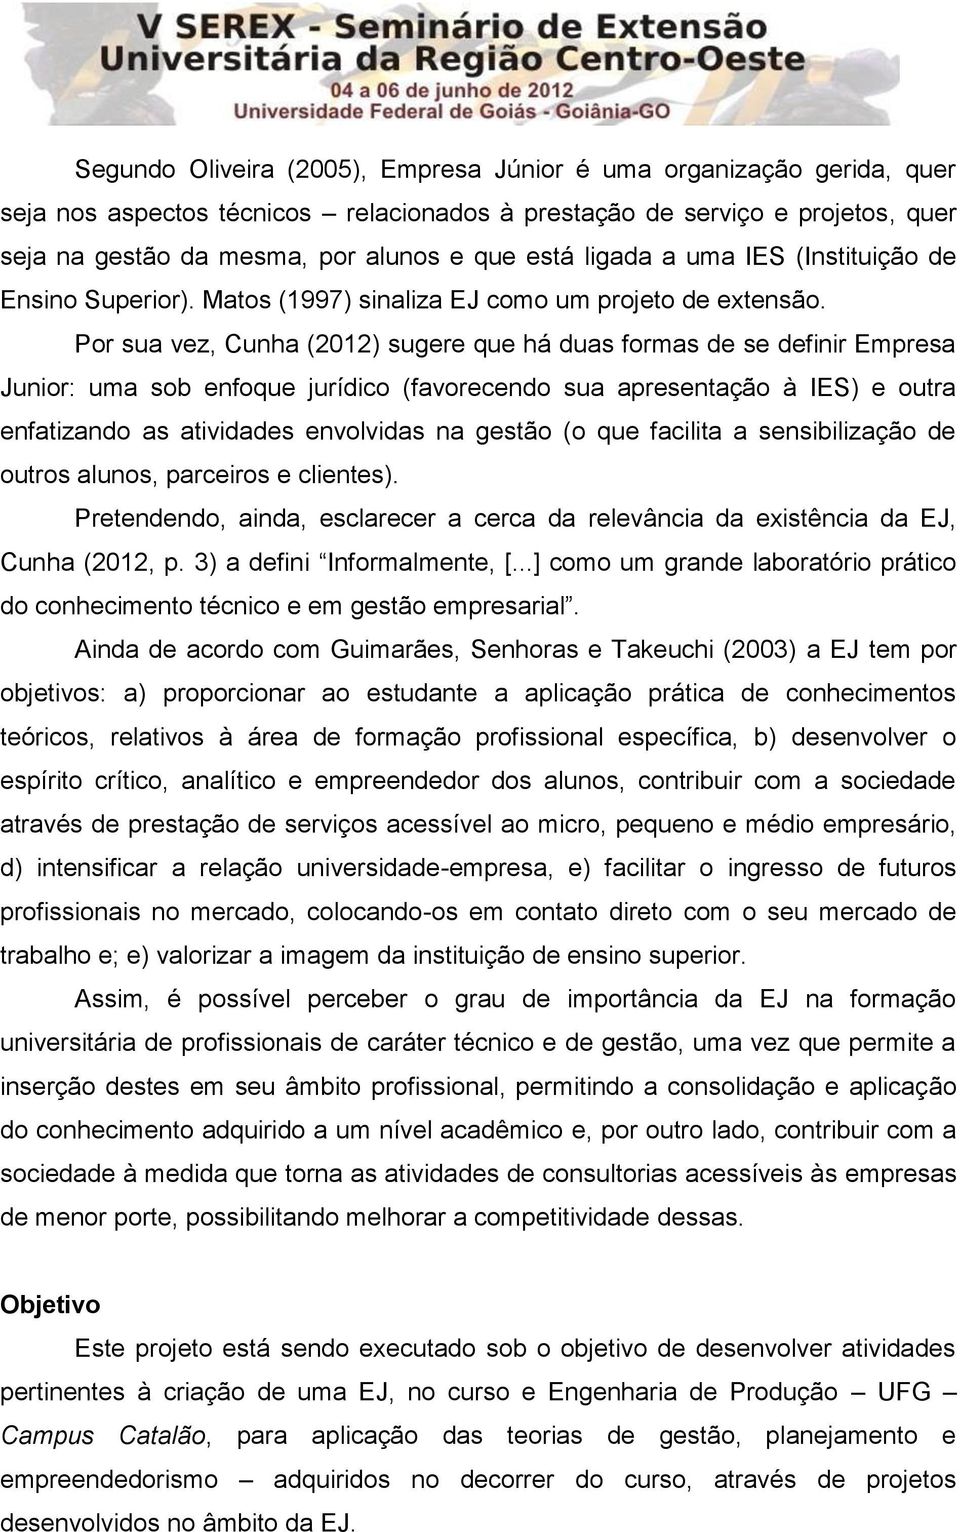 Por sua vez, Cunha (2012) sugere que há duas formas de se definir Empresa Junior: uma sob enfoque jurídico (favorecendo sua apresentação à IES) e outra enfatizando as atividades envolvidas na gestão